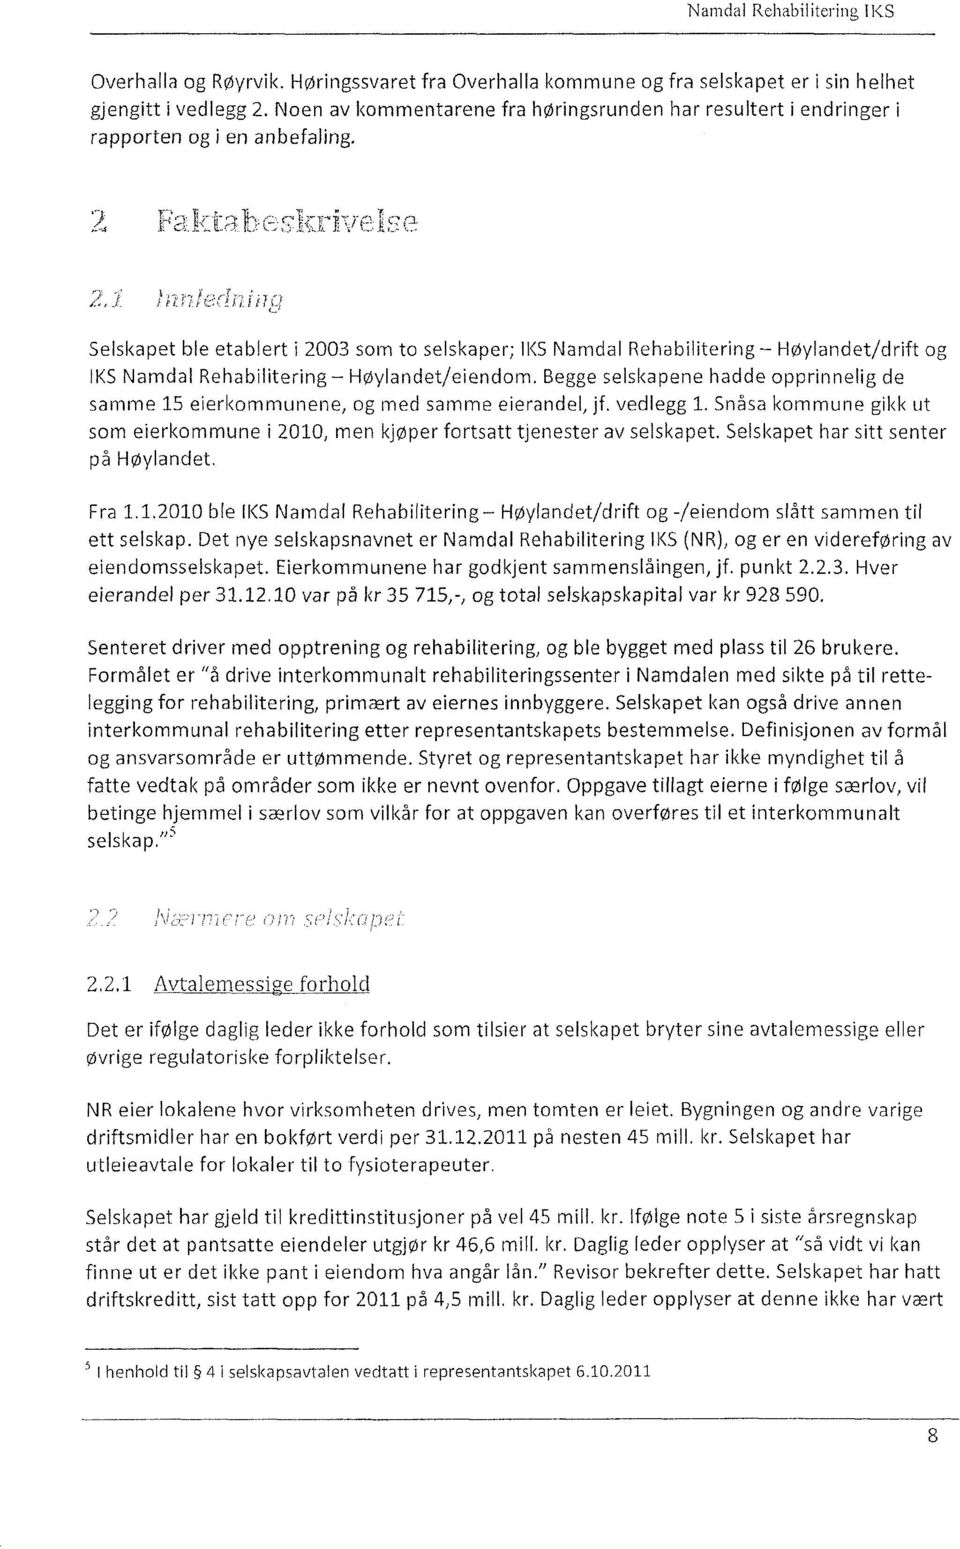 2, 7(7 Selskapet ble etablert i 2003 som to selskaper; IKS Namdal Rehabilitering Høylandet/drift og 1KS Namdal Rehabilitering Høylandet/eiendom.